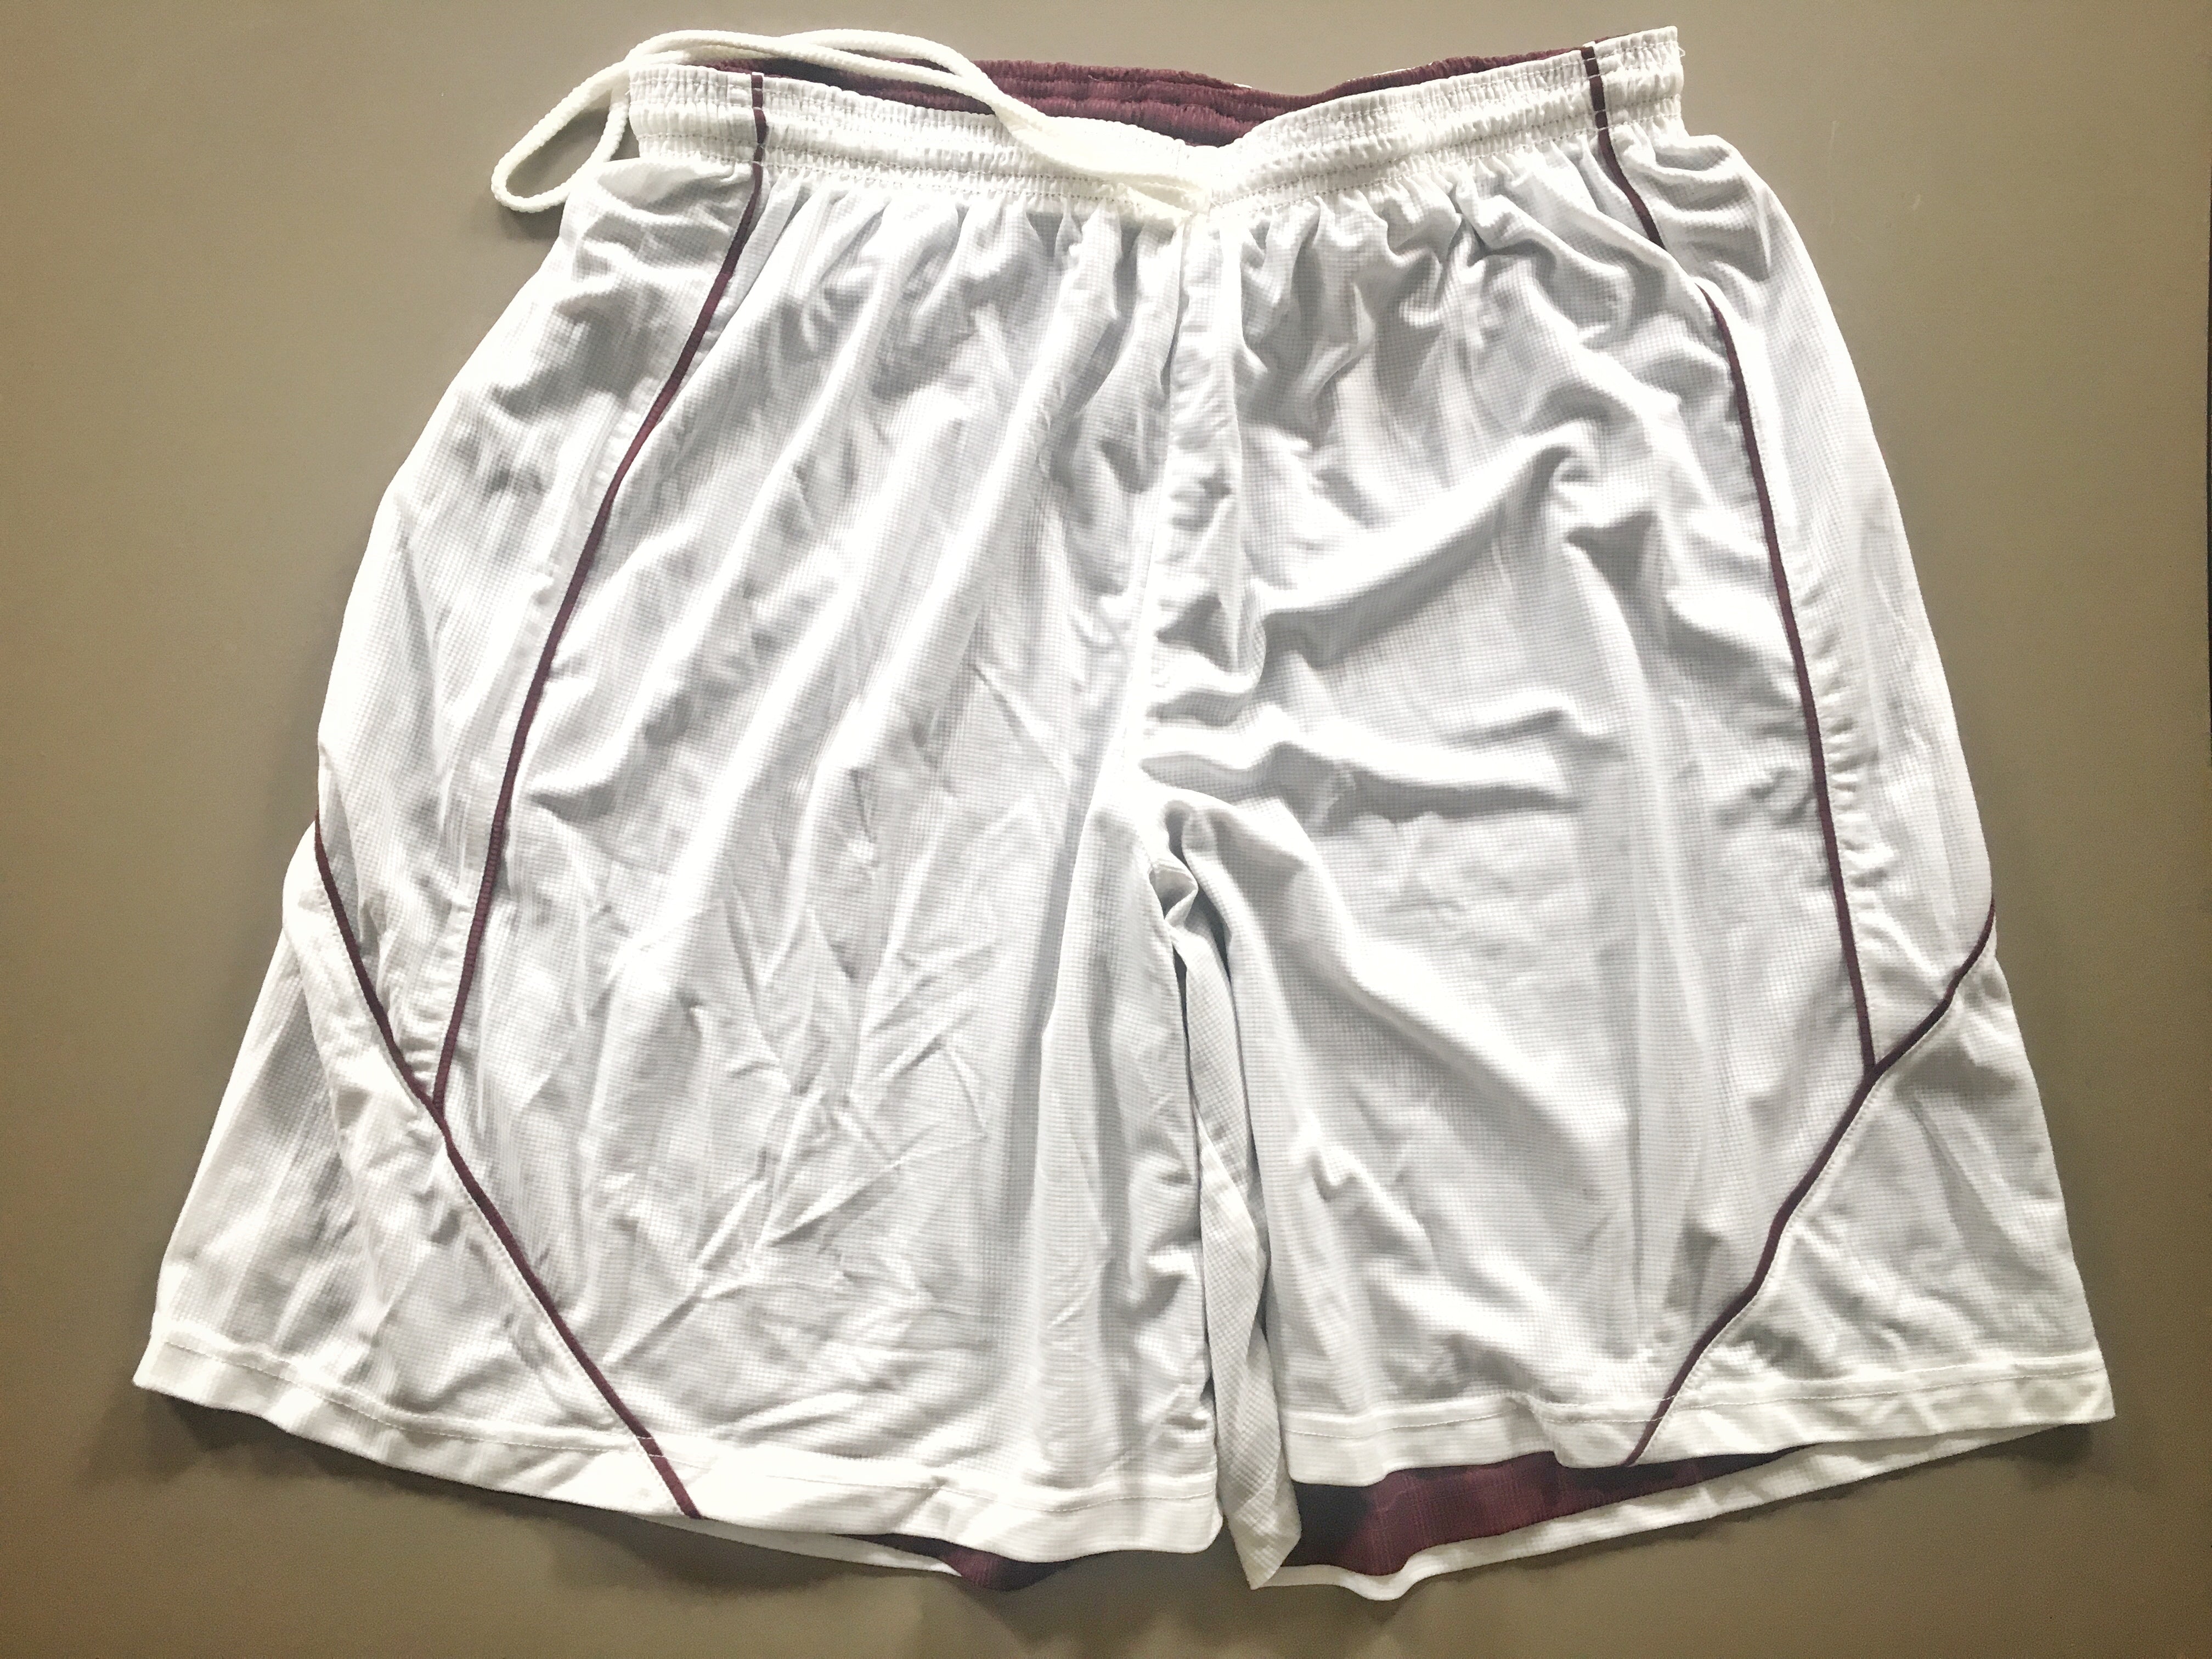 Shorts (maroon/white or black/white, reversible, knee-length)